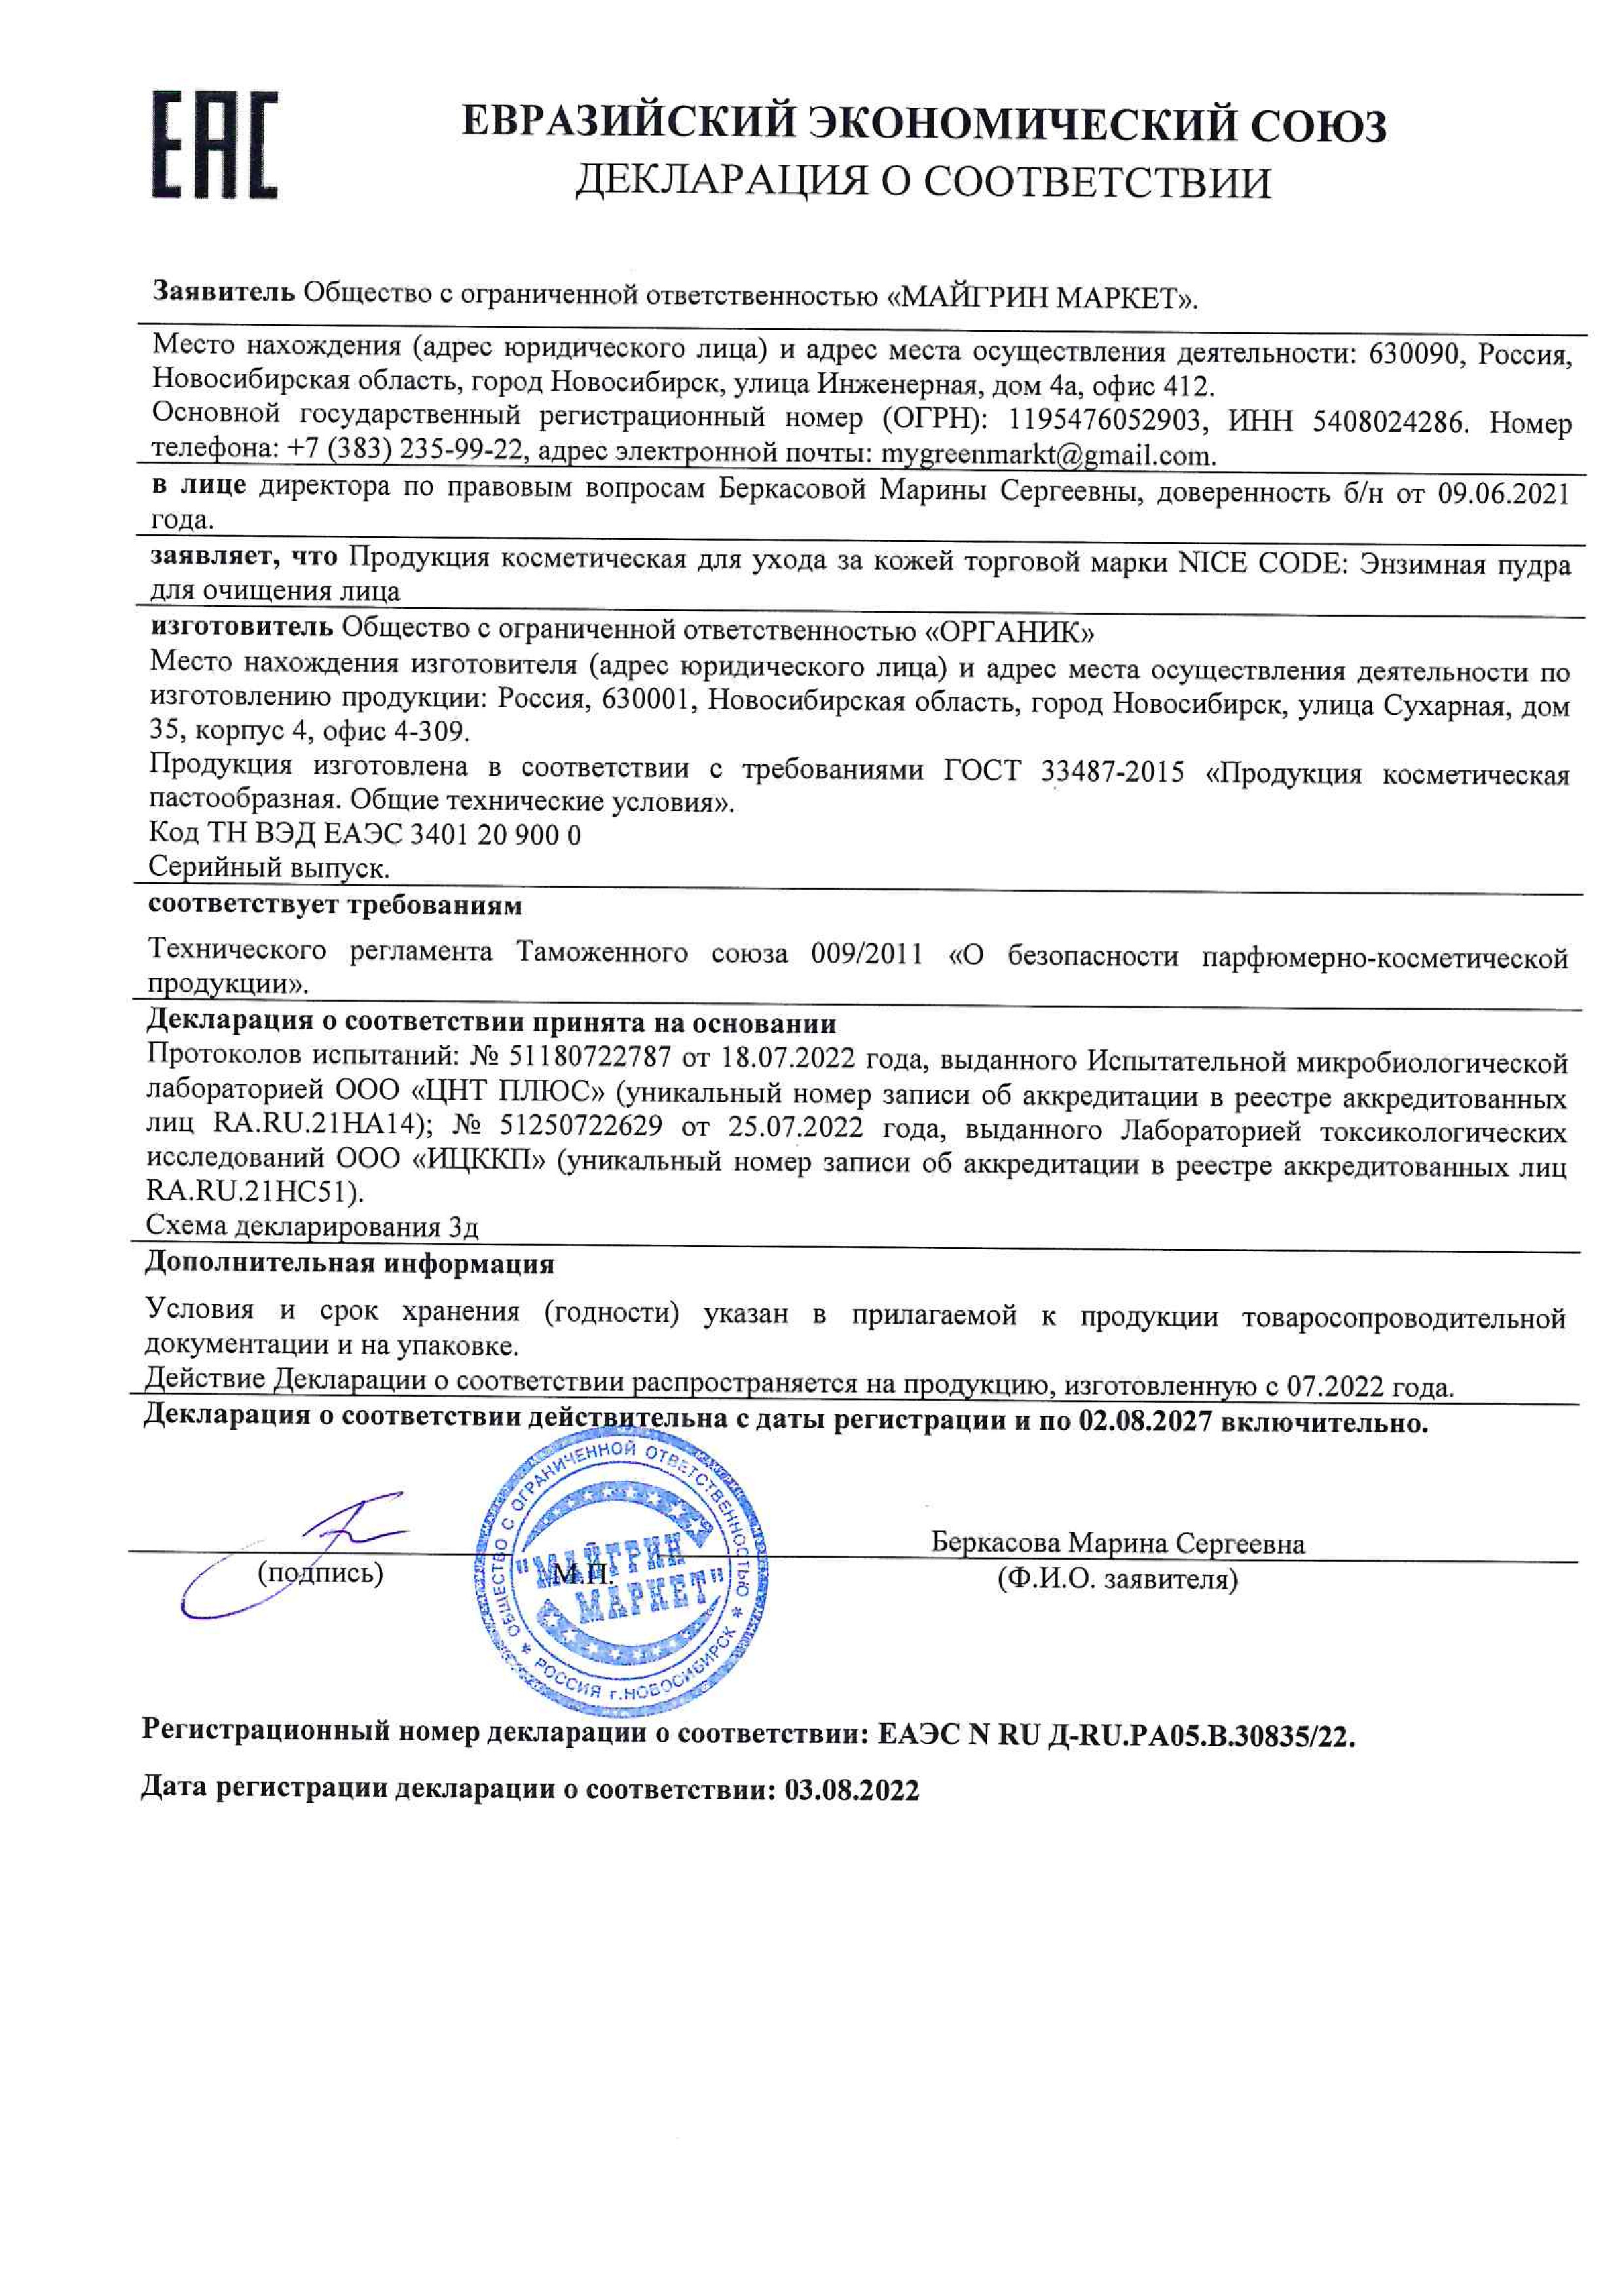 Declaration-of-Conformity-Nice-Code-2912-ru (pdf.io)